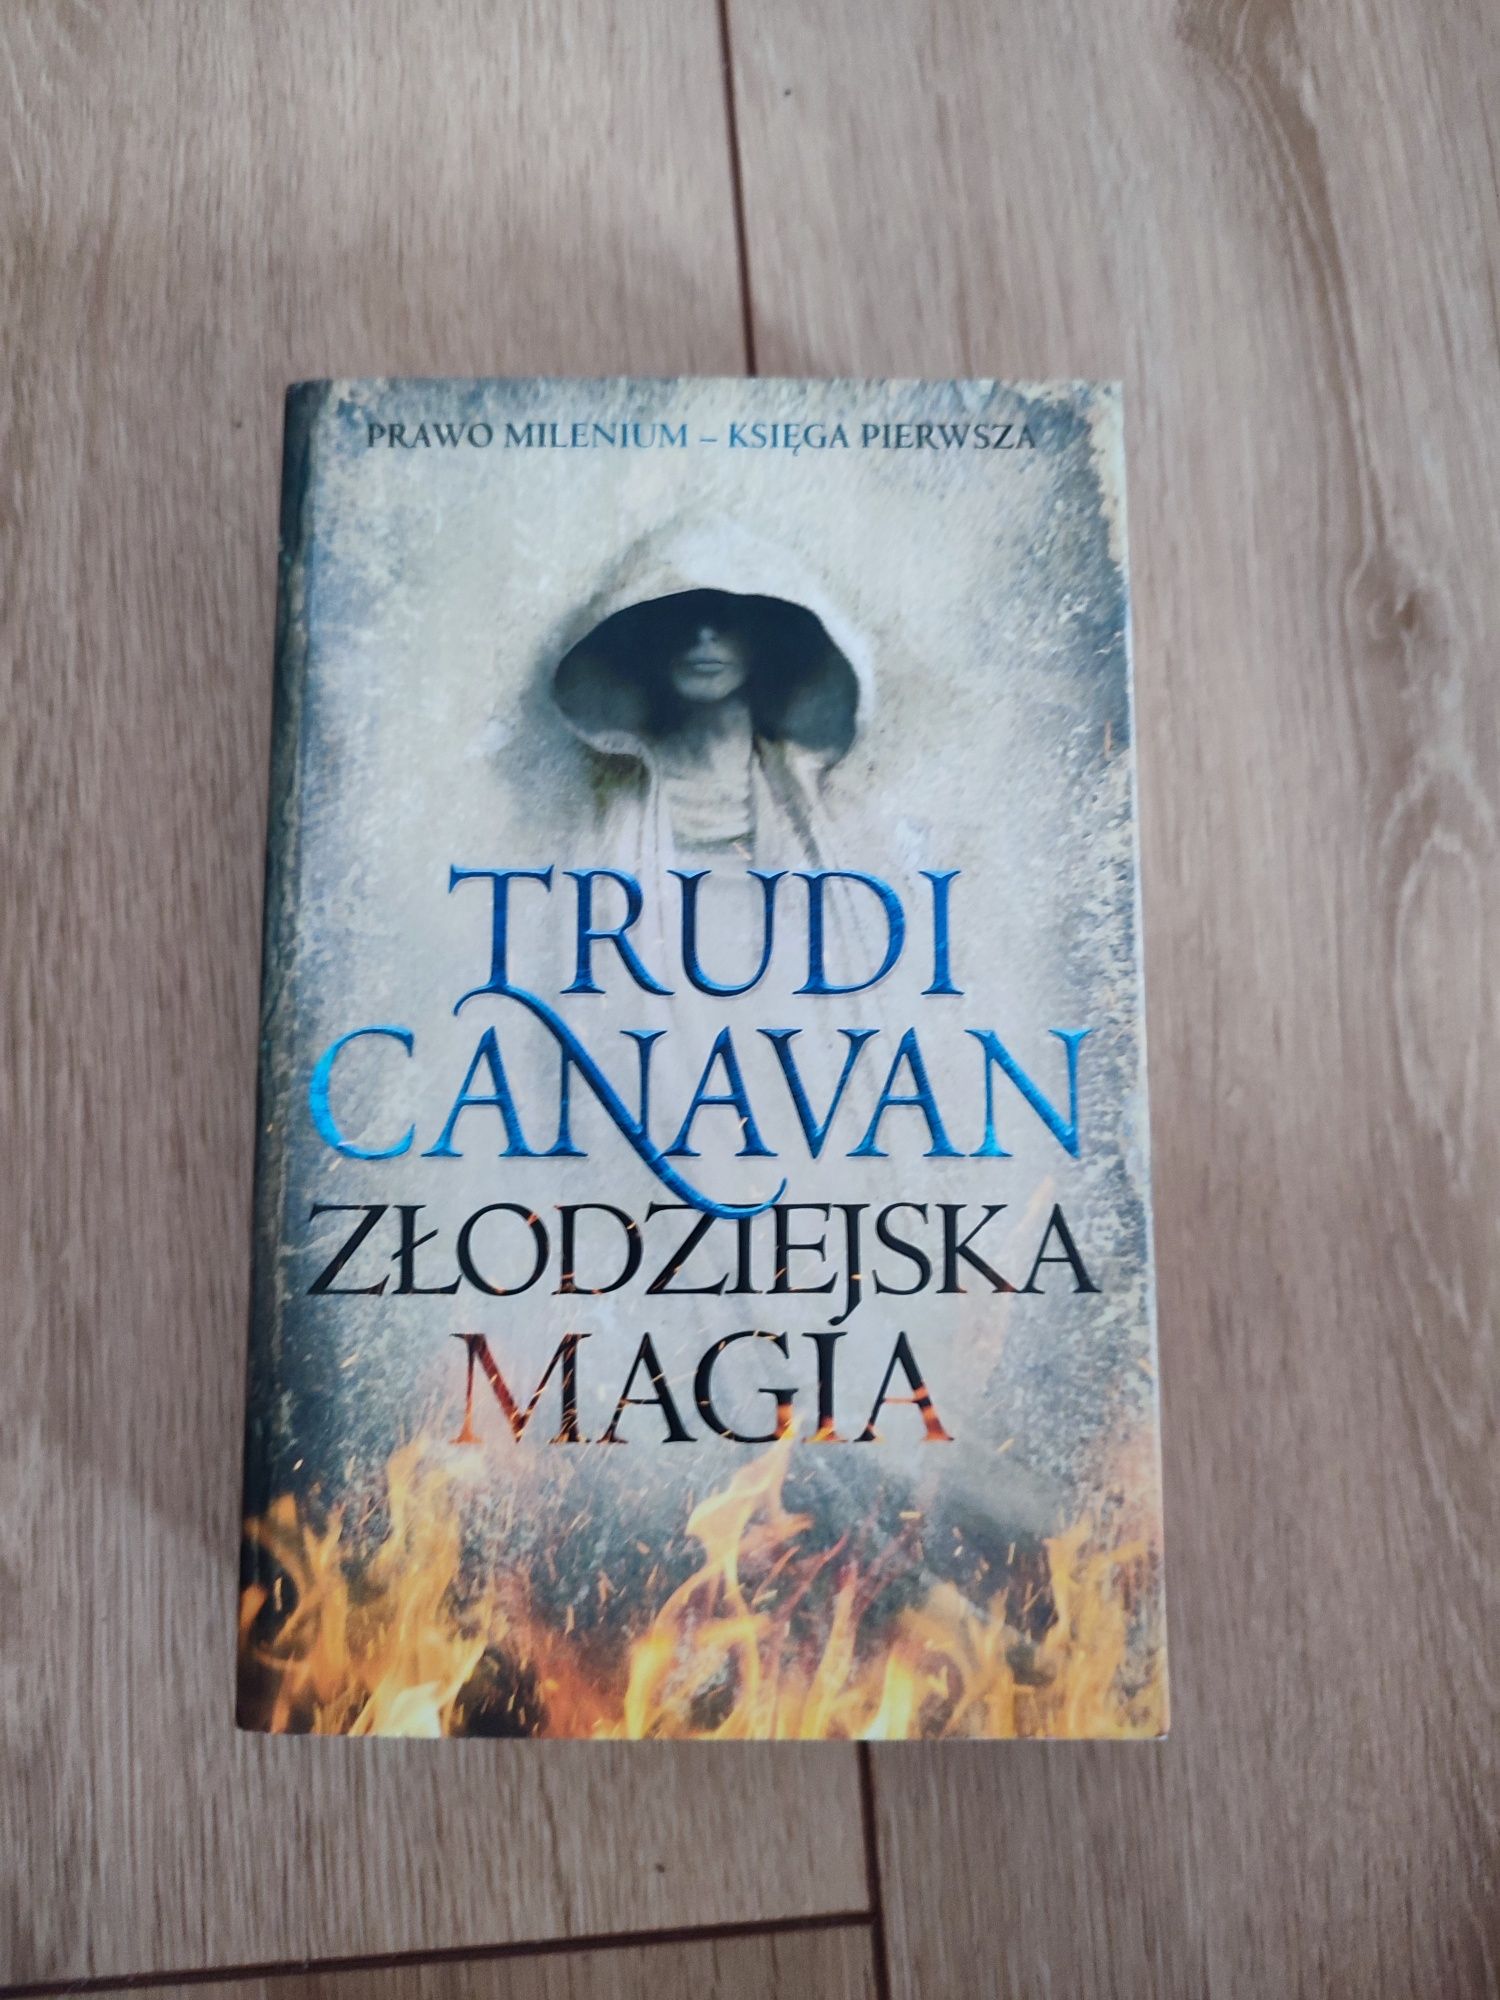 Trudi Canavan, Złodziejska Magia, tom 1 Prawo Millenium